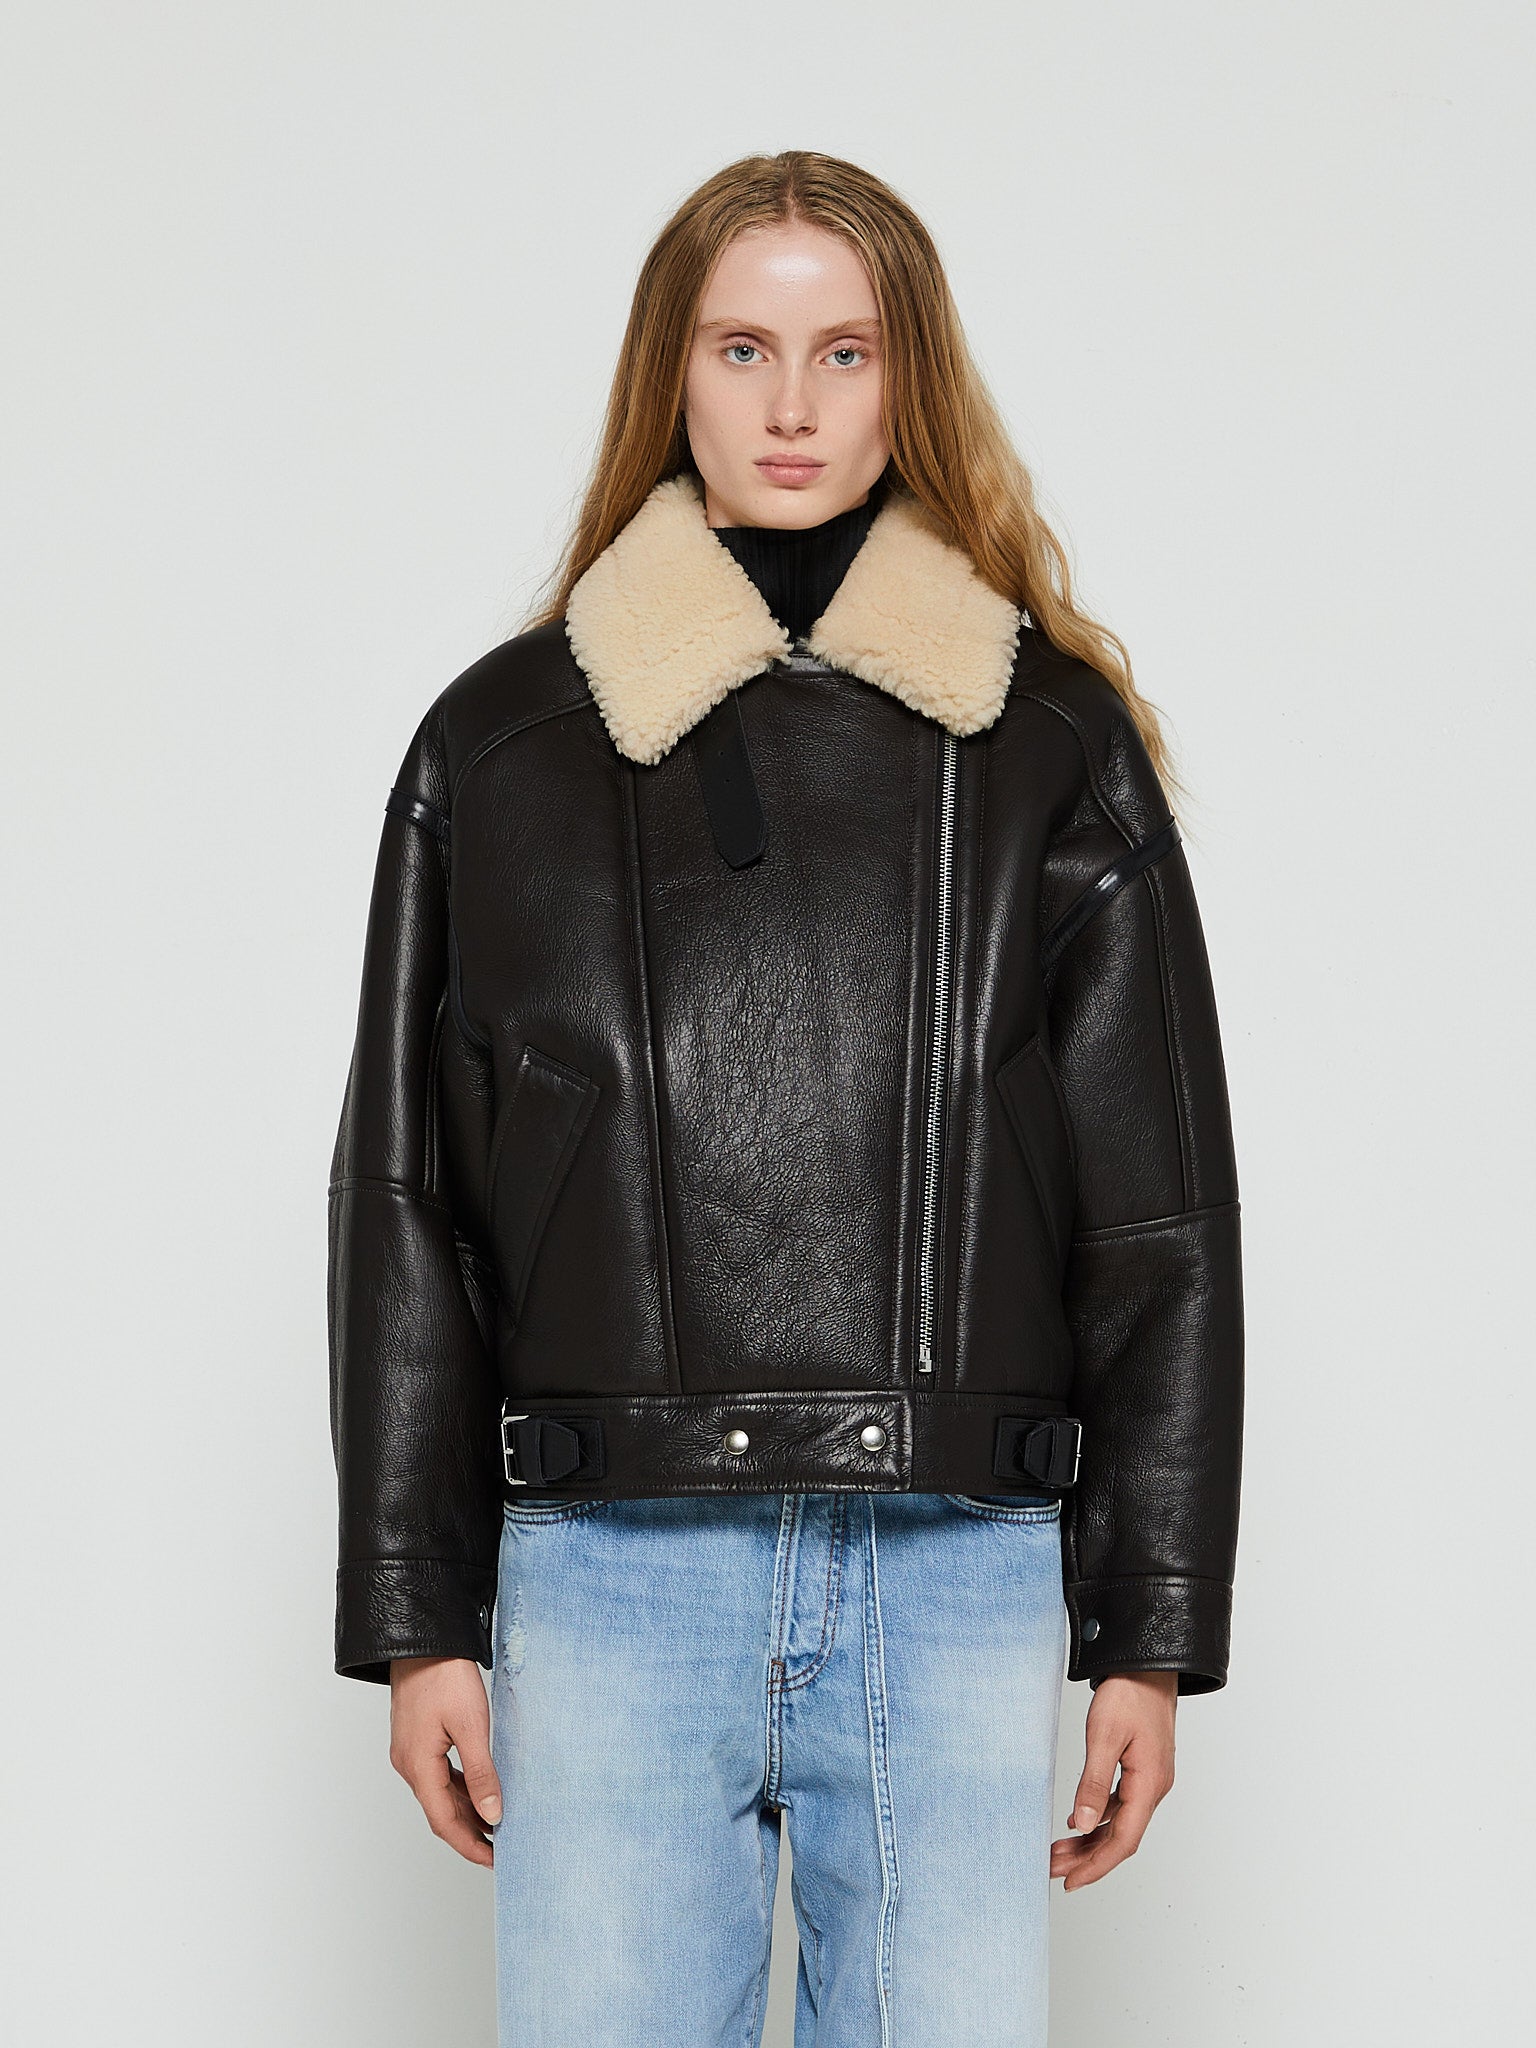 Coats & Jackets stoy – – Tag